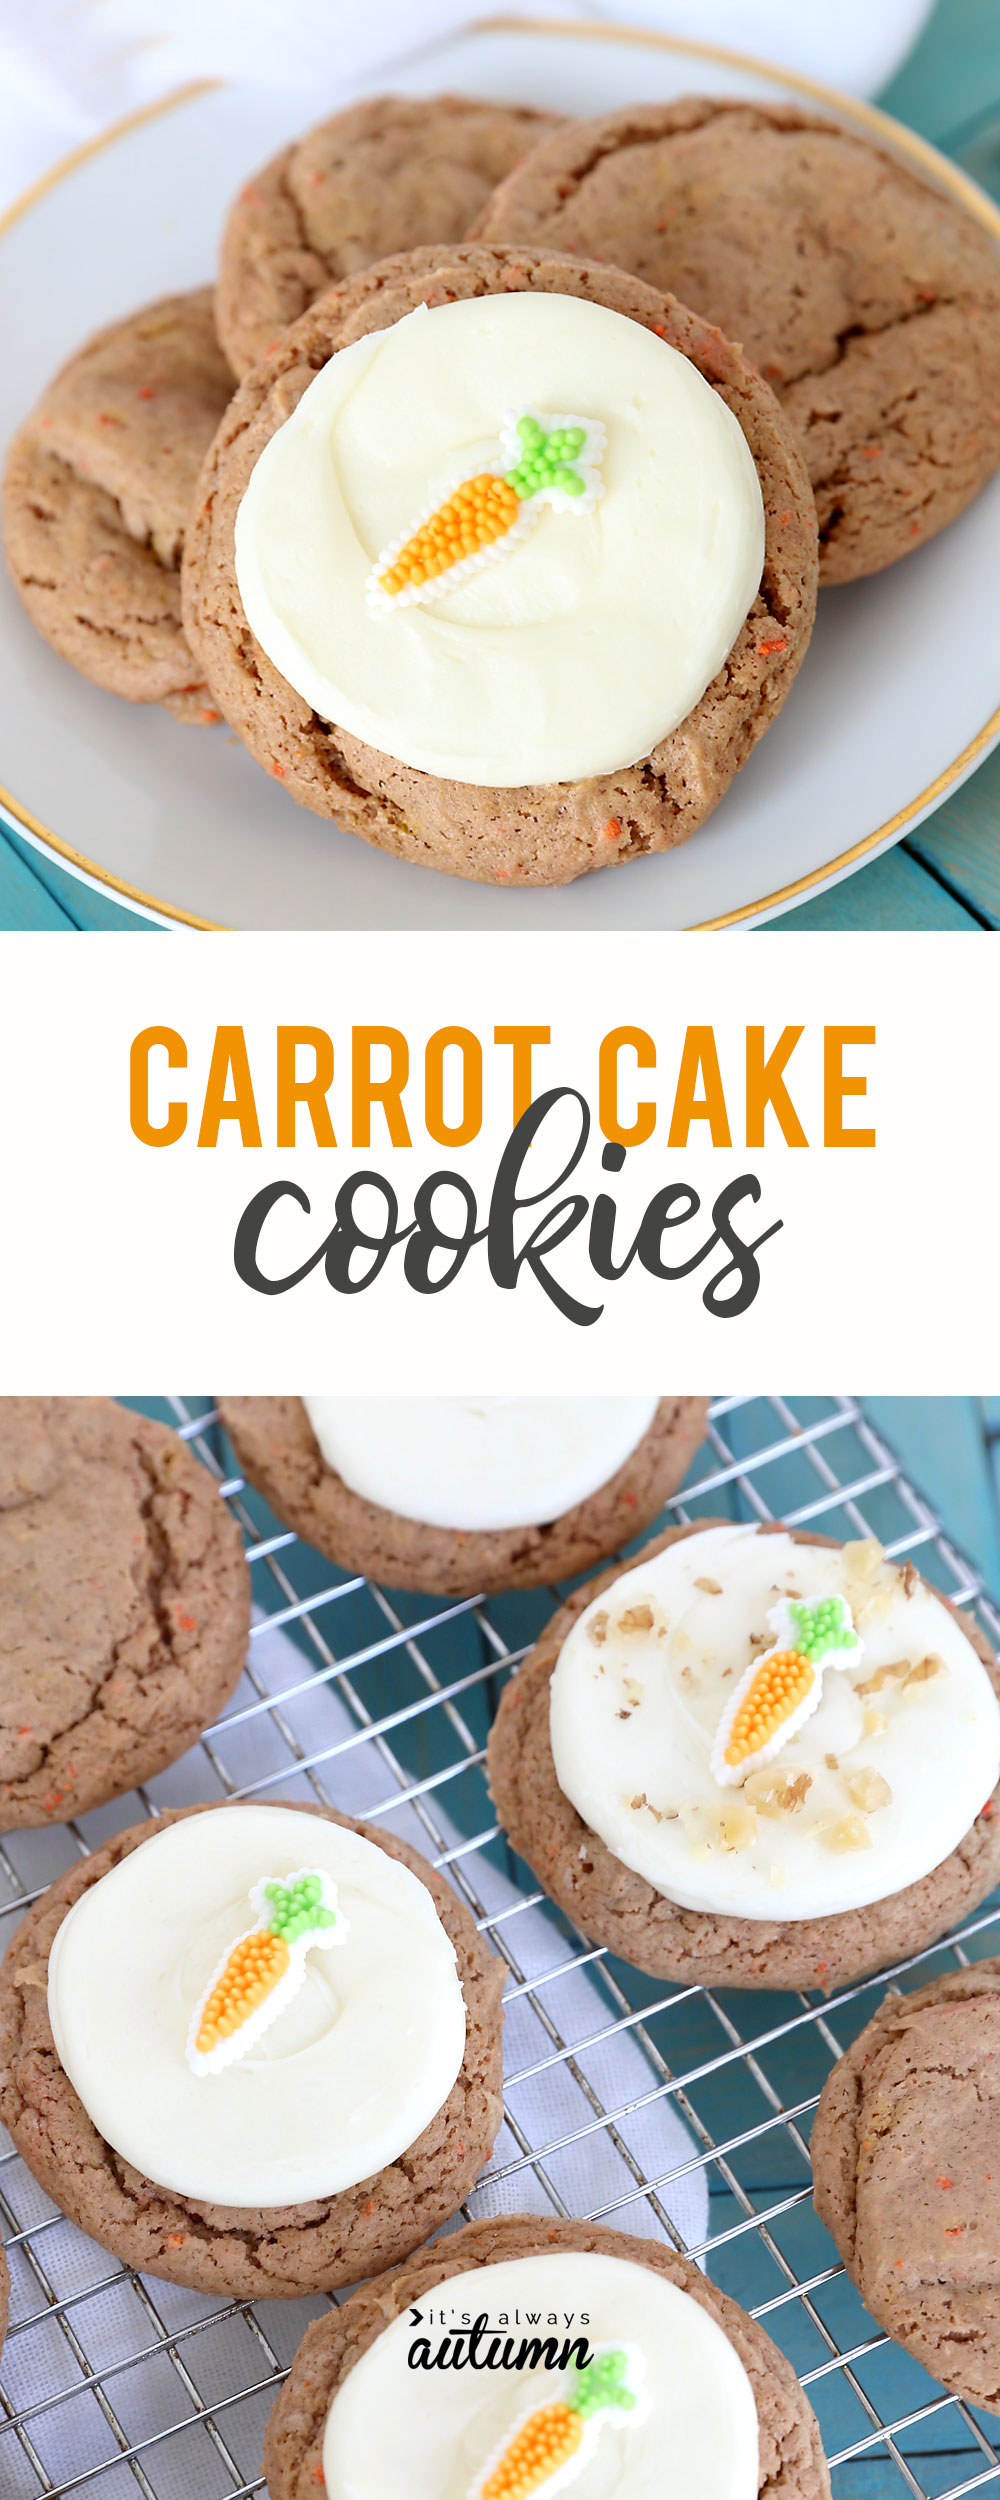 Carrot cake cookies